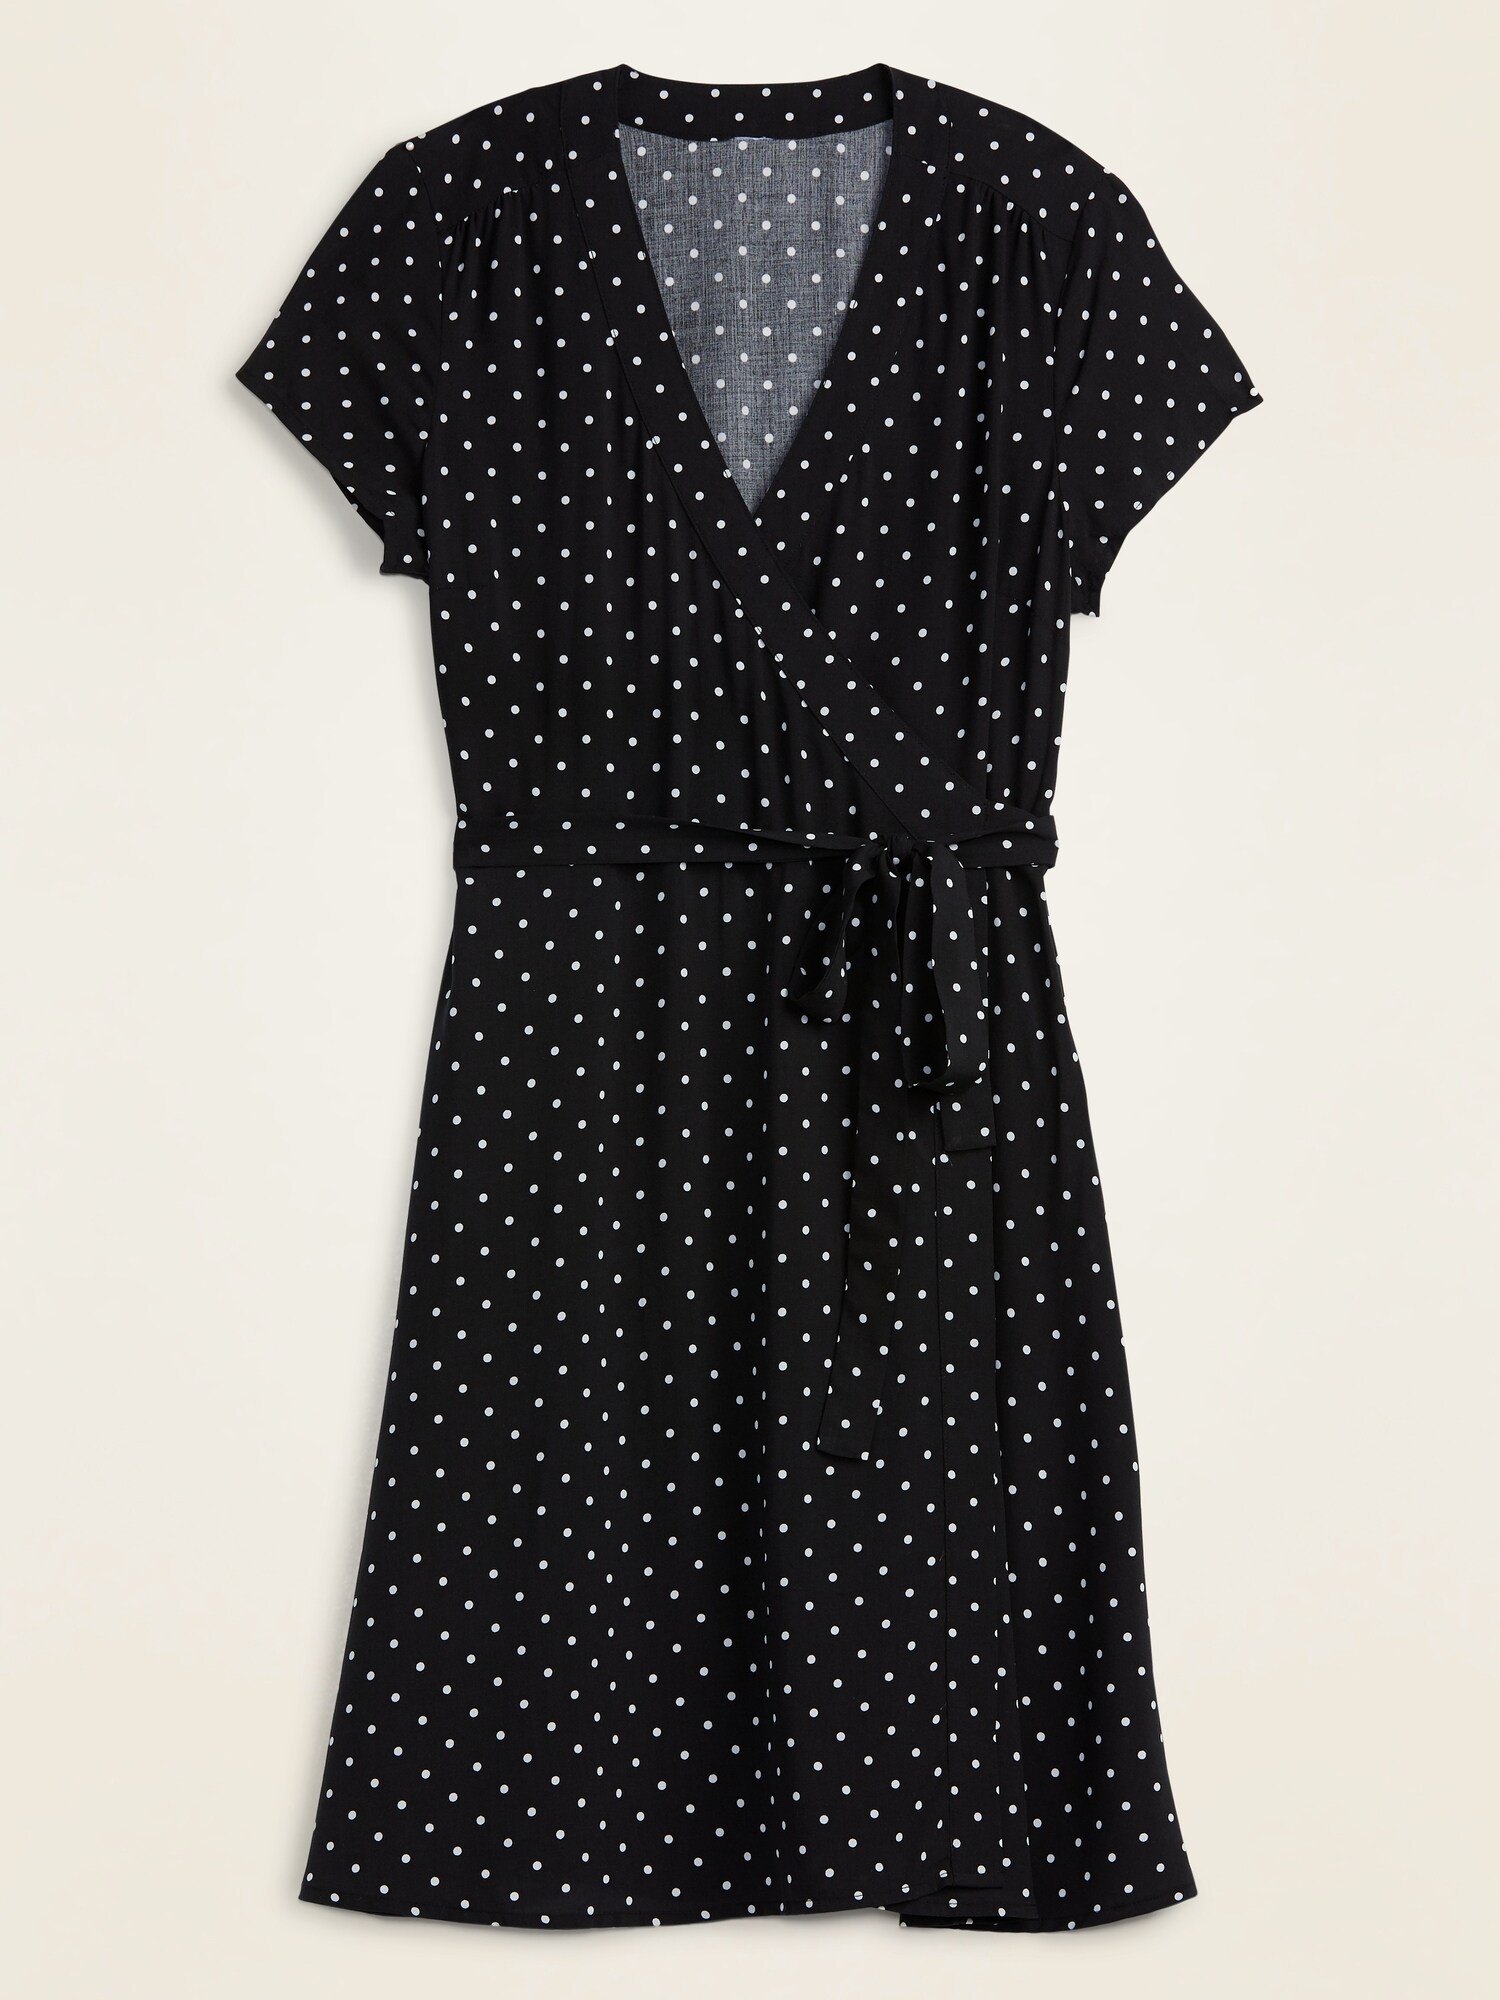 old navy black and white polka dot dress